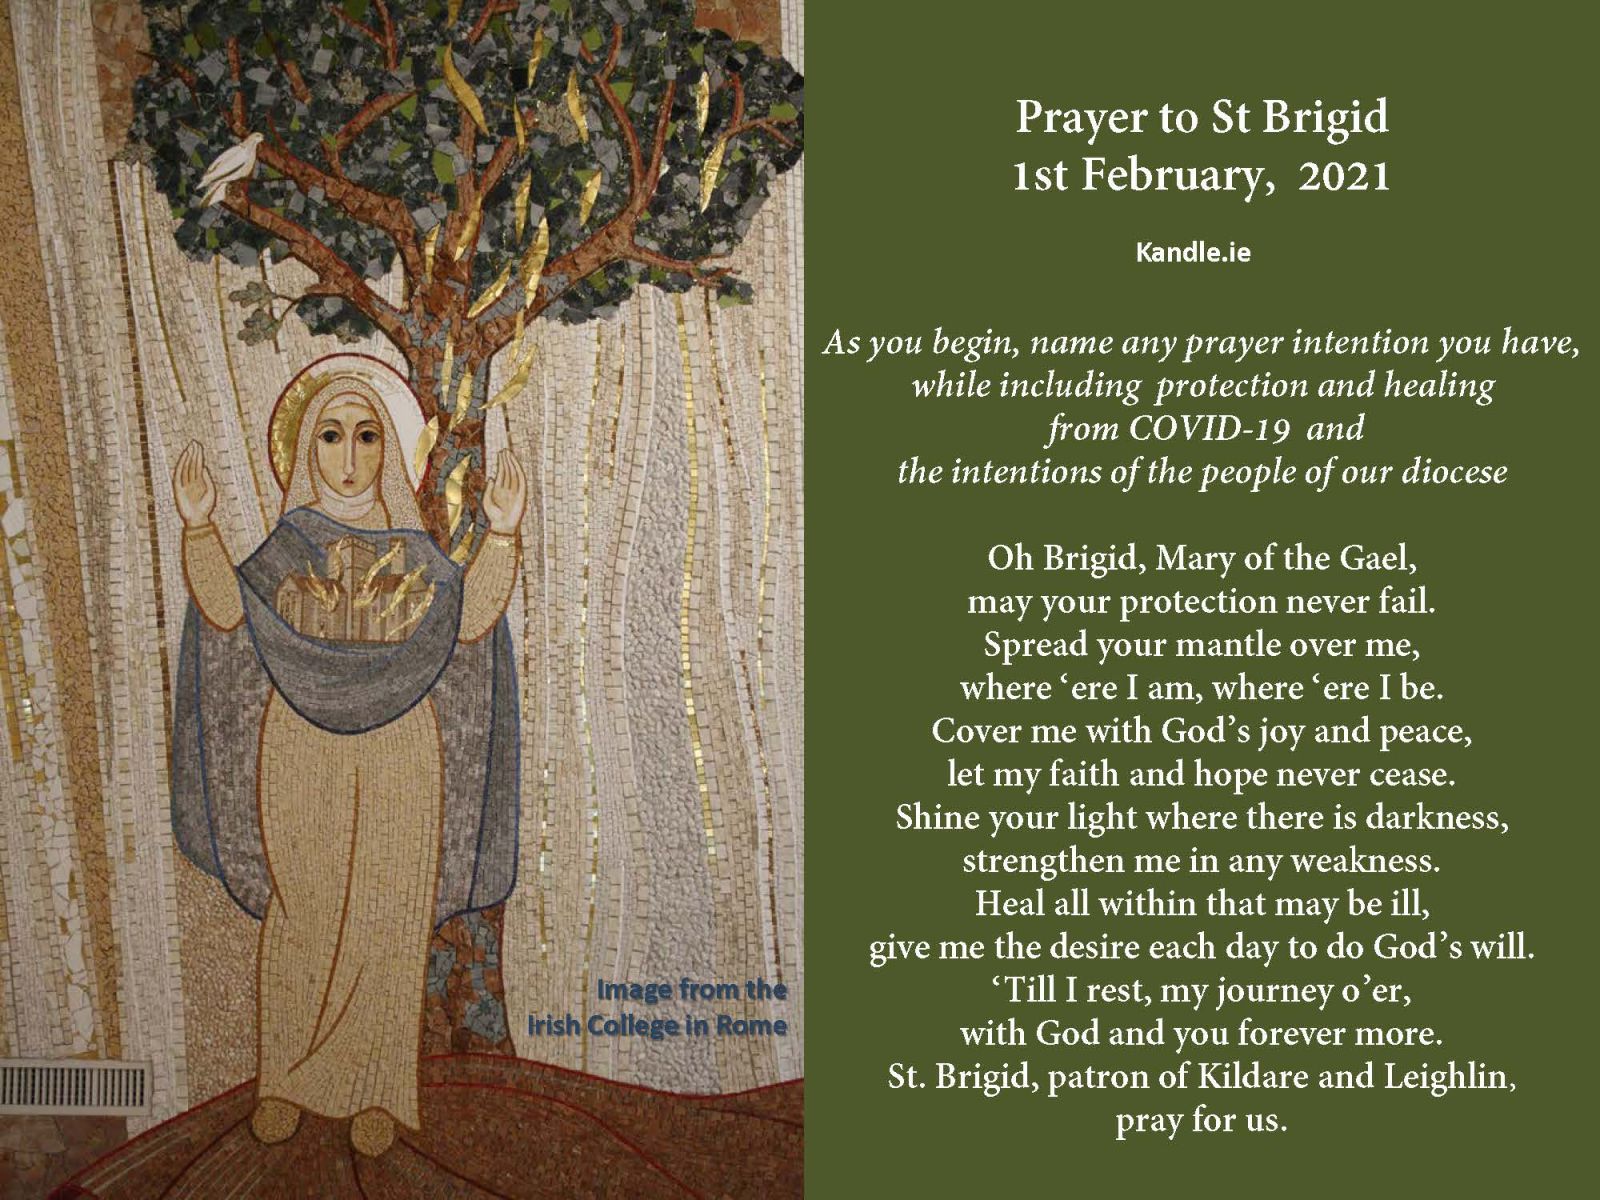 irish prayer wallpaper